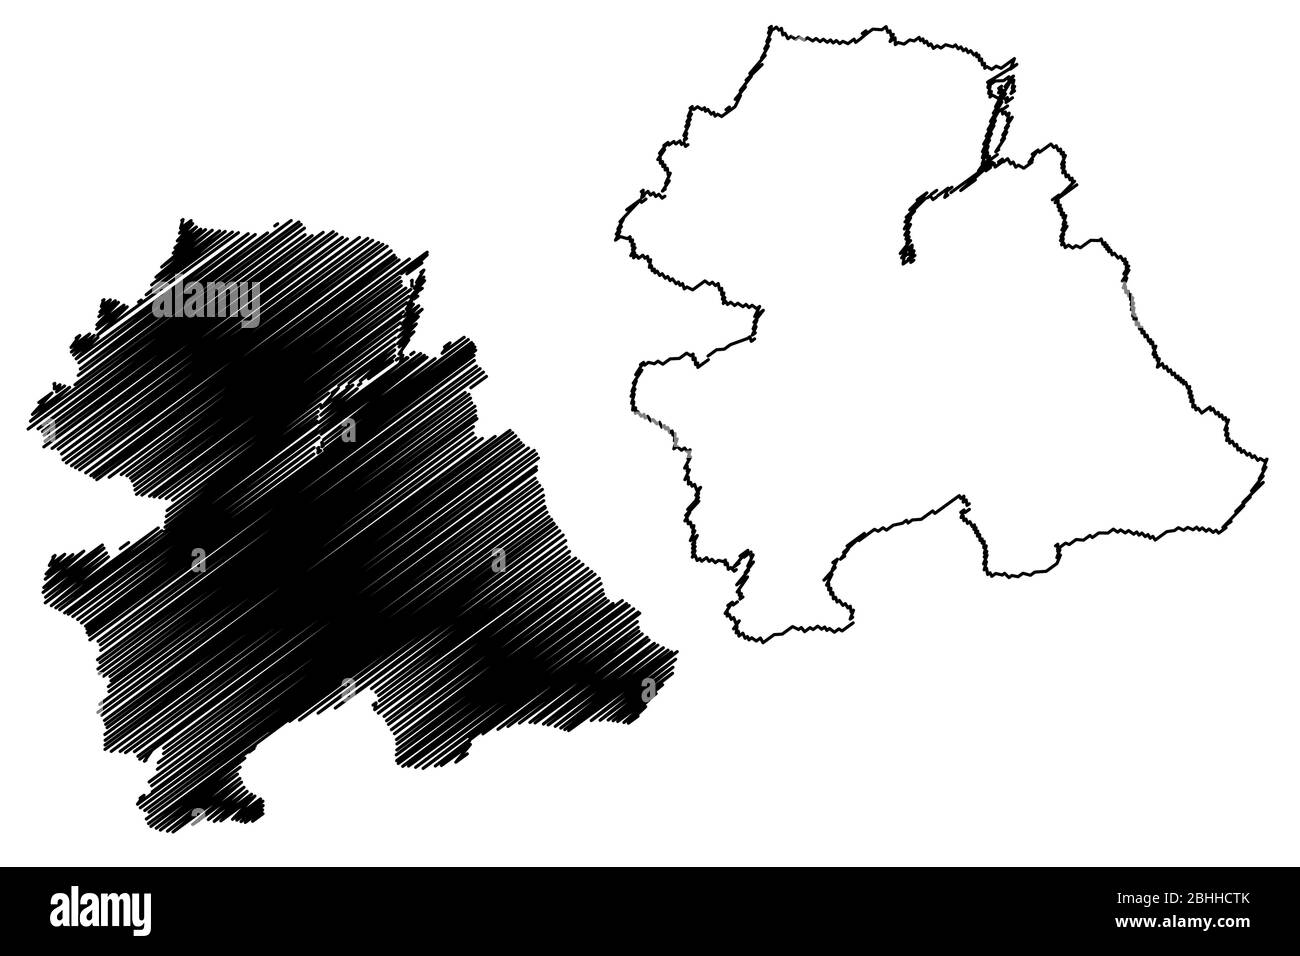 Ville d'Odense (Royaume du Danemark) illustration vectorielle de carte, esquisse de griffonnage carte de la ville d'Odense Illustration de Vecteur